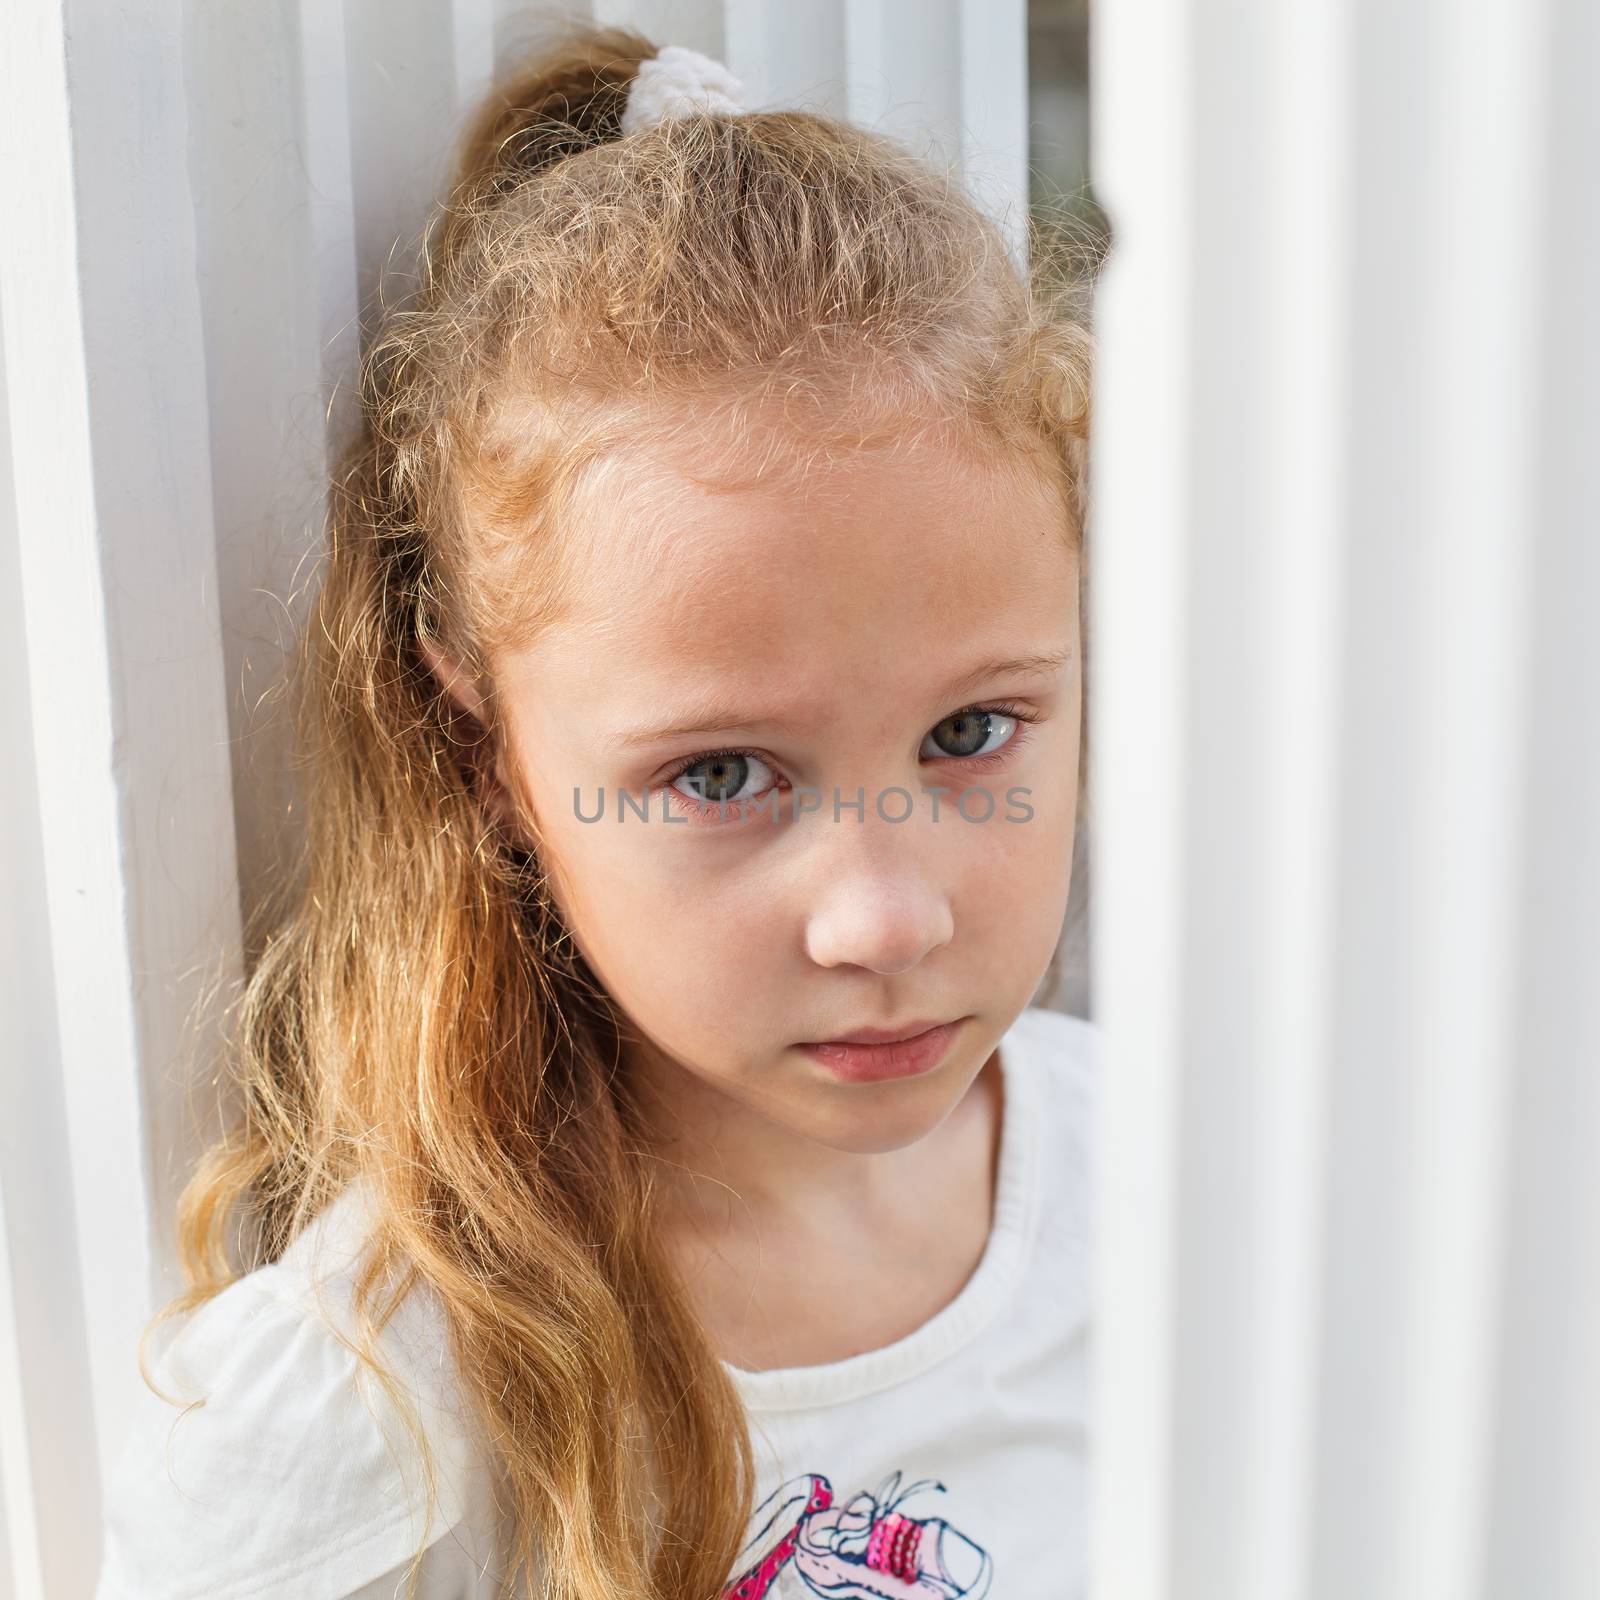 Sad little girl by altanaka